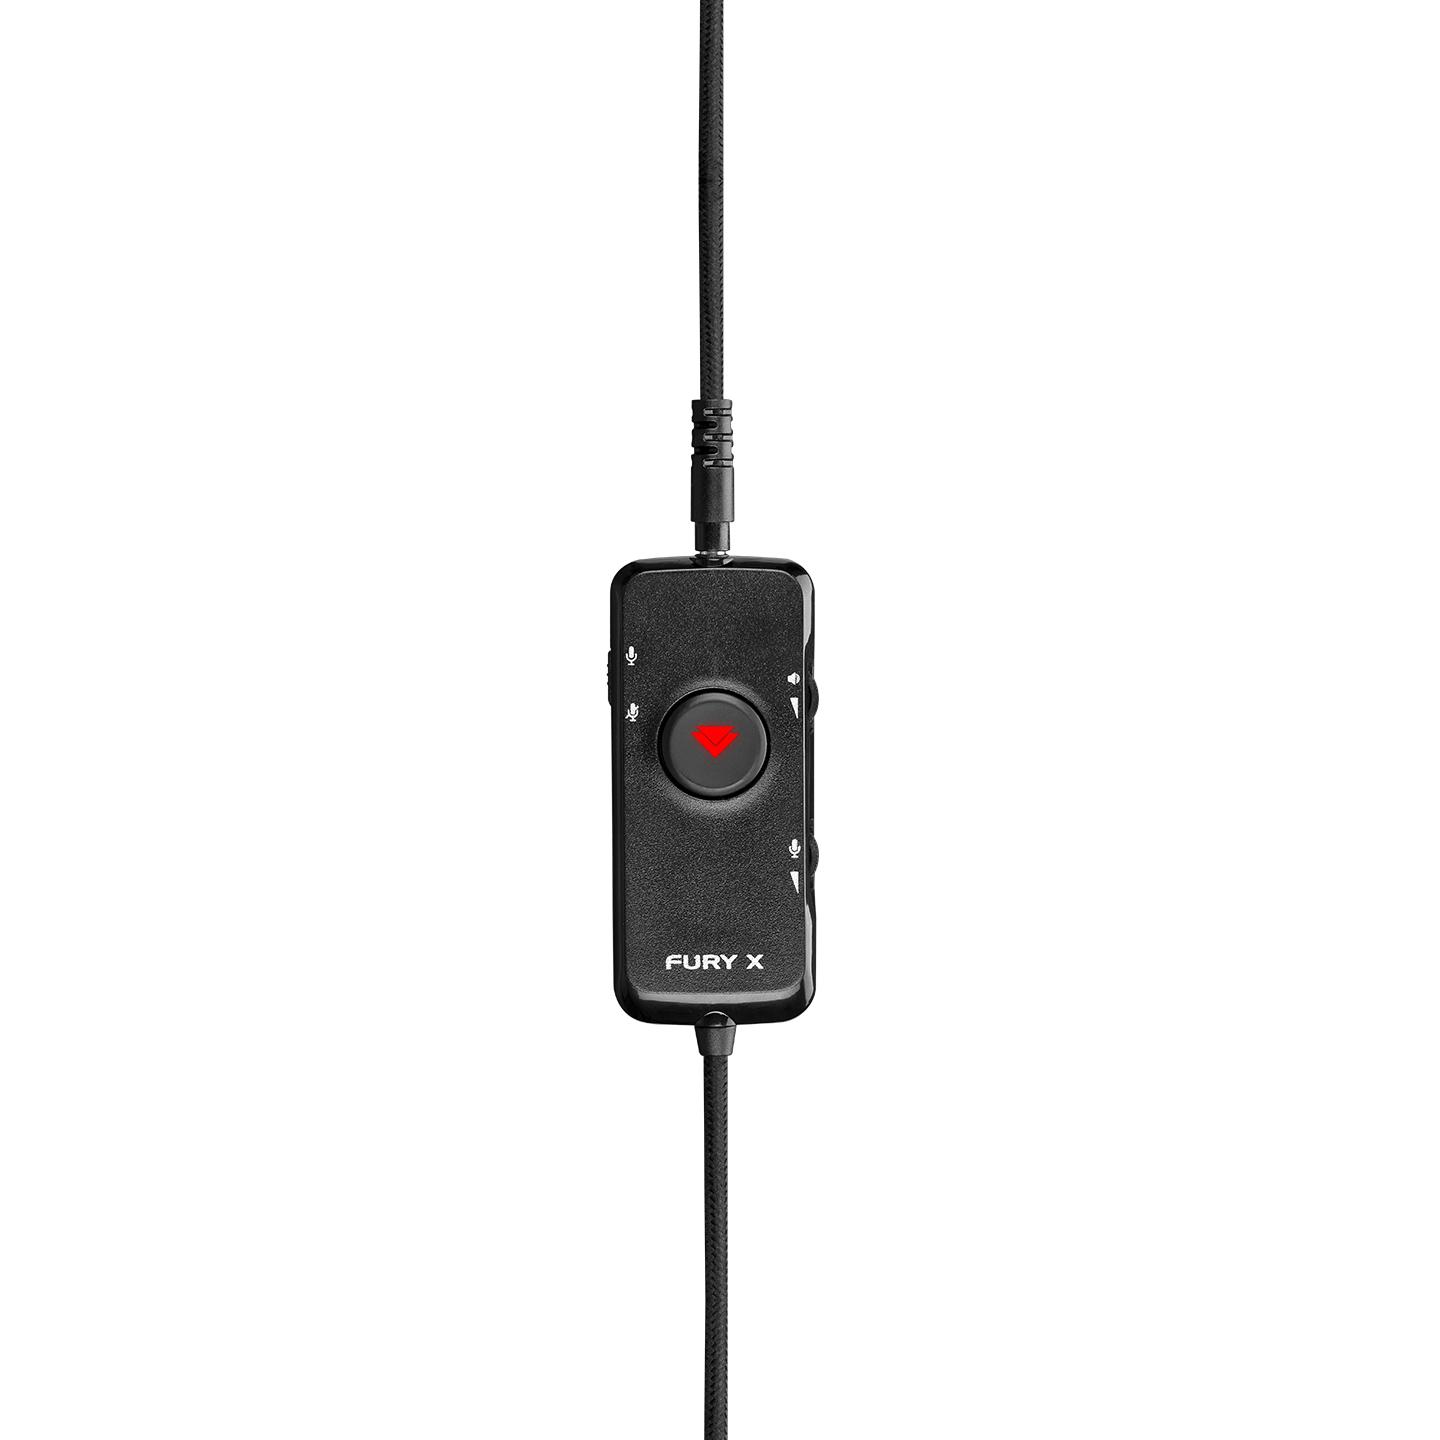 Selected image for RAMPAGE Gejmerske slušalice sa mikrofonom - in line RM-F5 FURY-X USB 7.1 crno-zelene